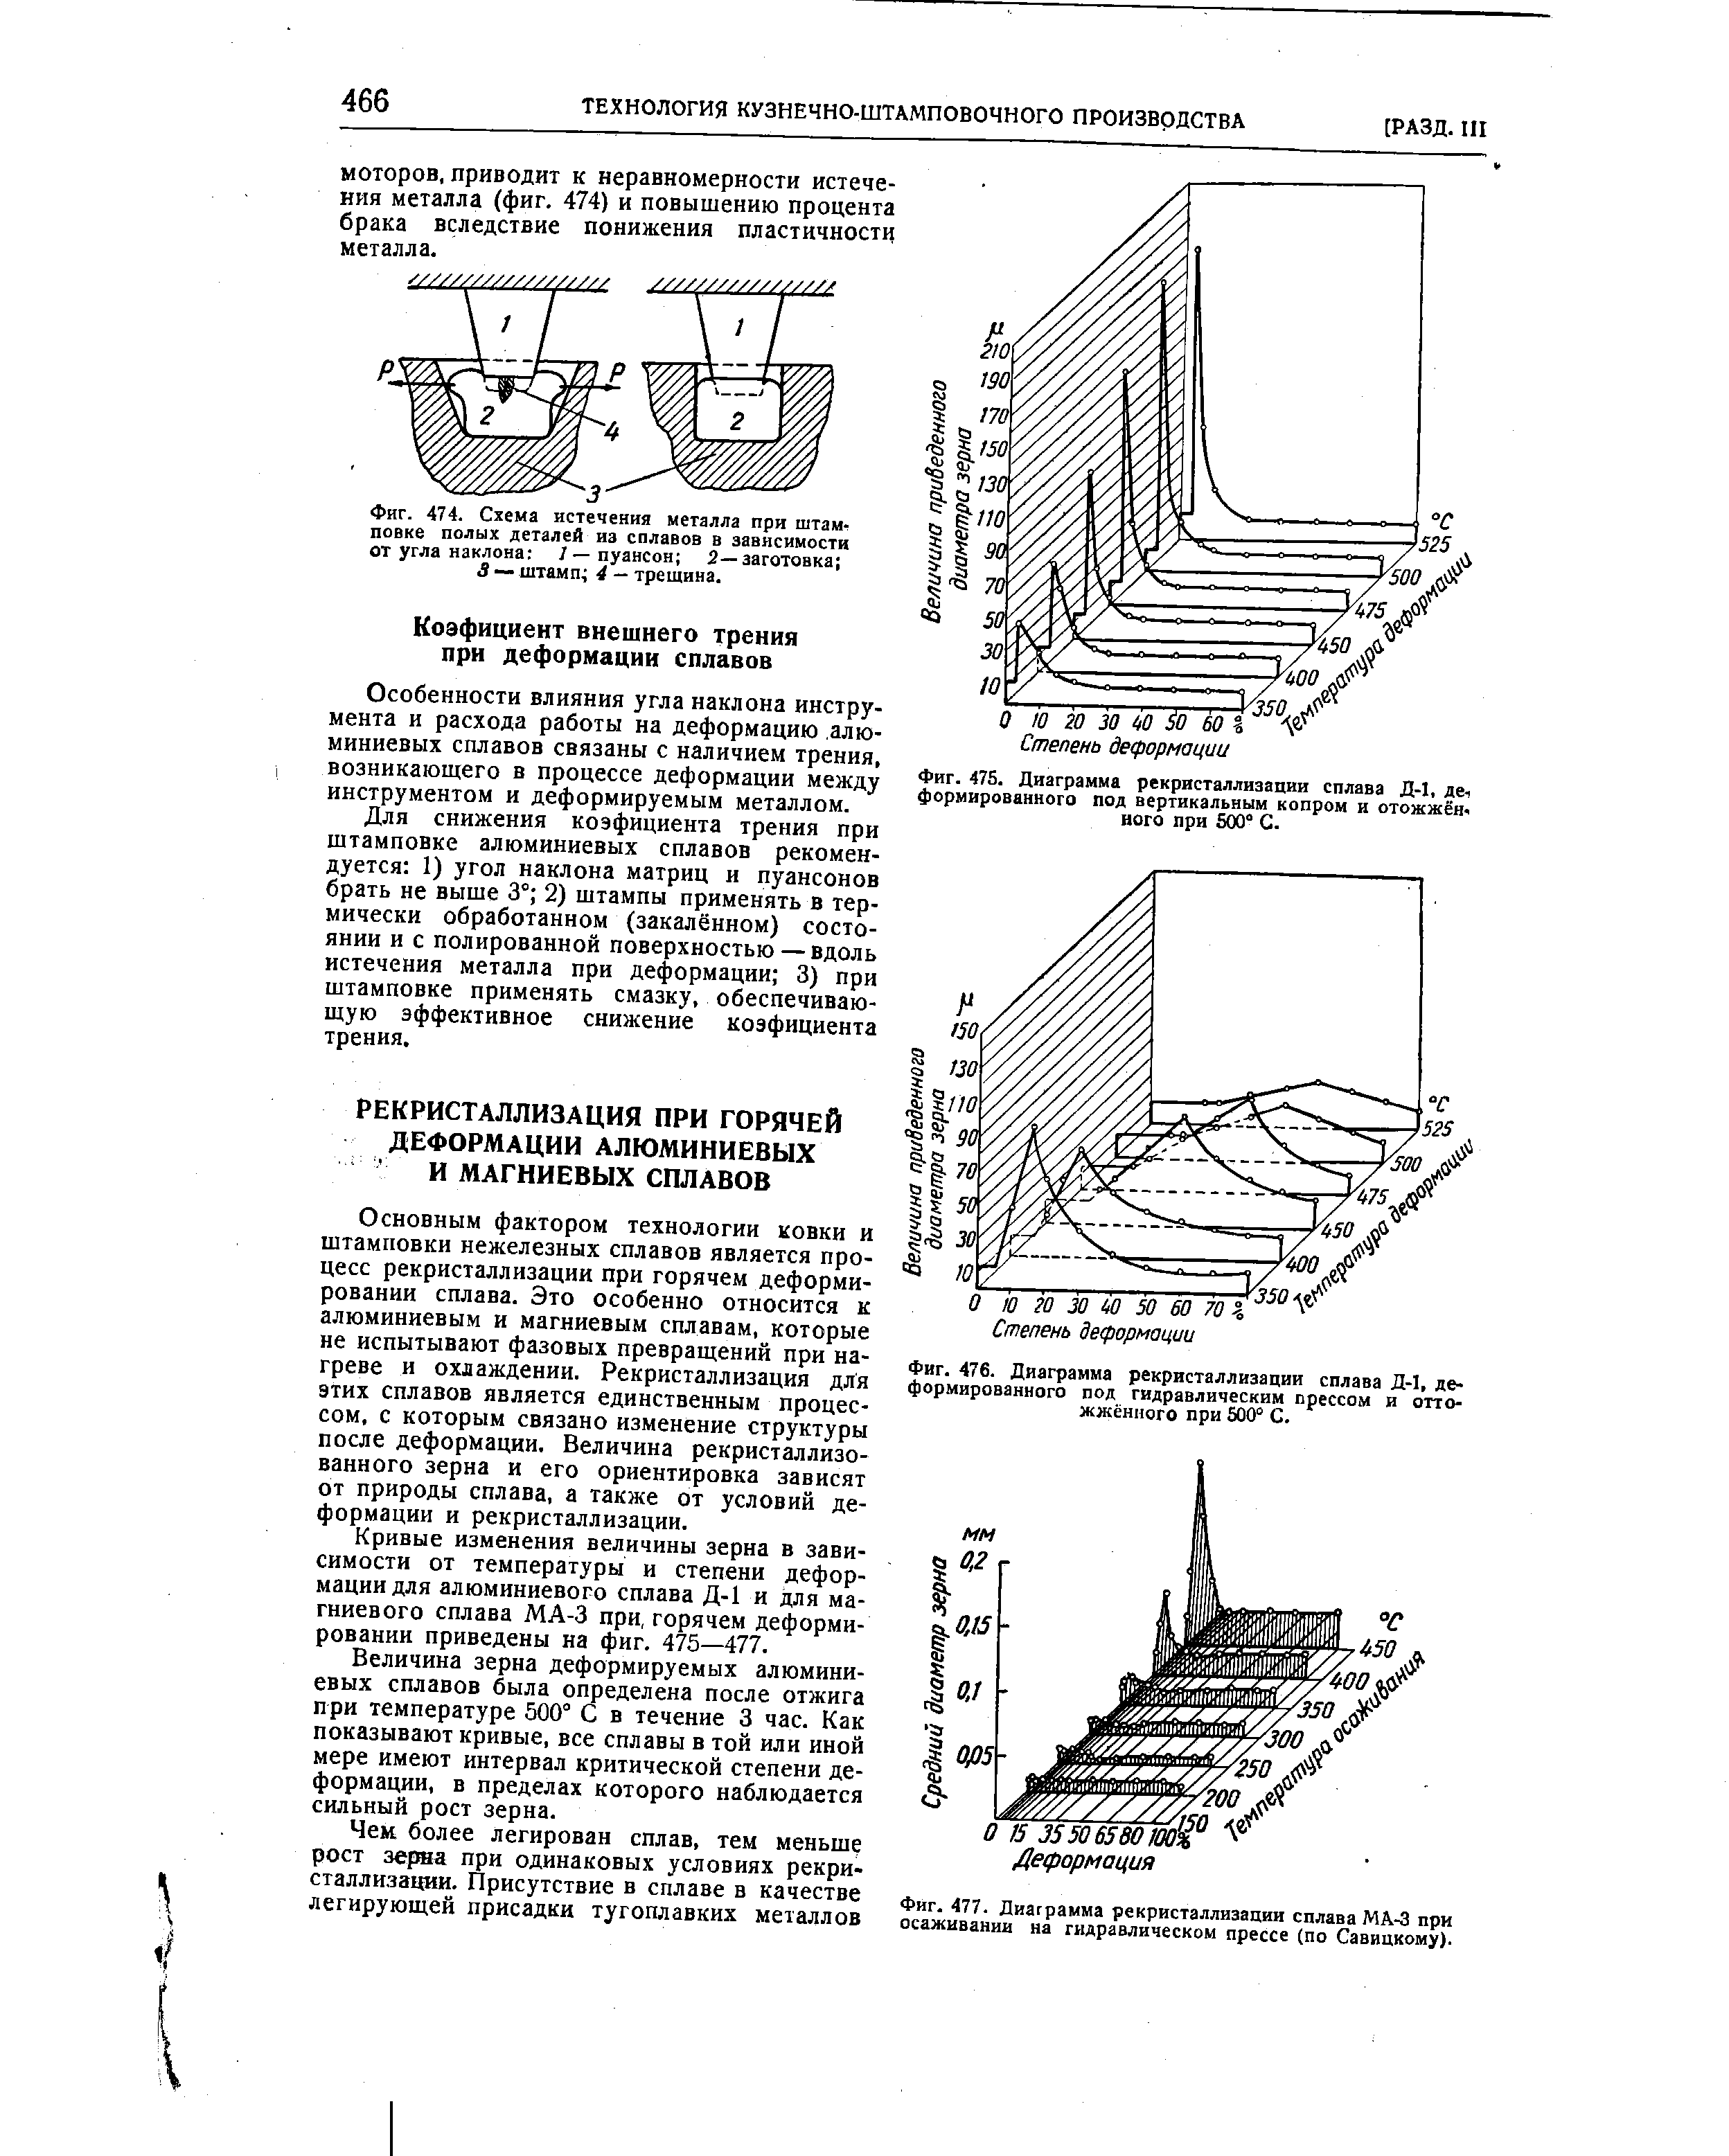 Фиг. 477. Диаграмма рекристаллизации сплава МА-3 при осаживании на гидравлическом прессе (по Савицкому).
